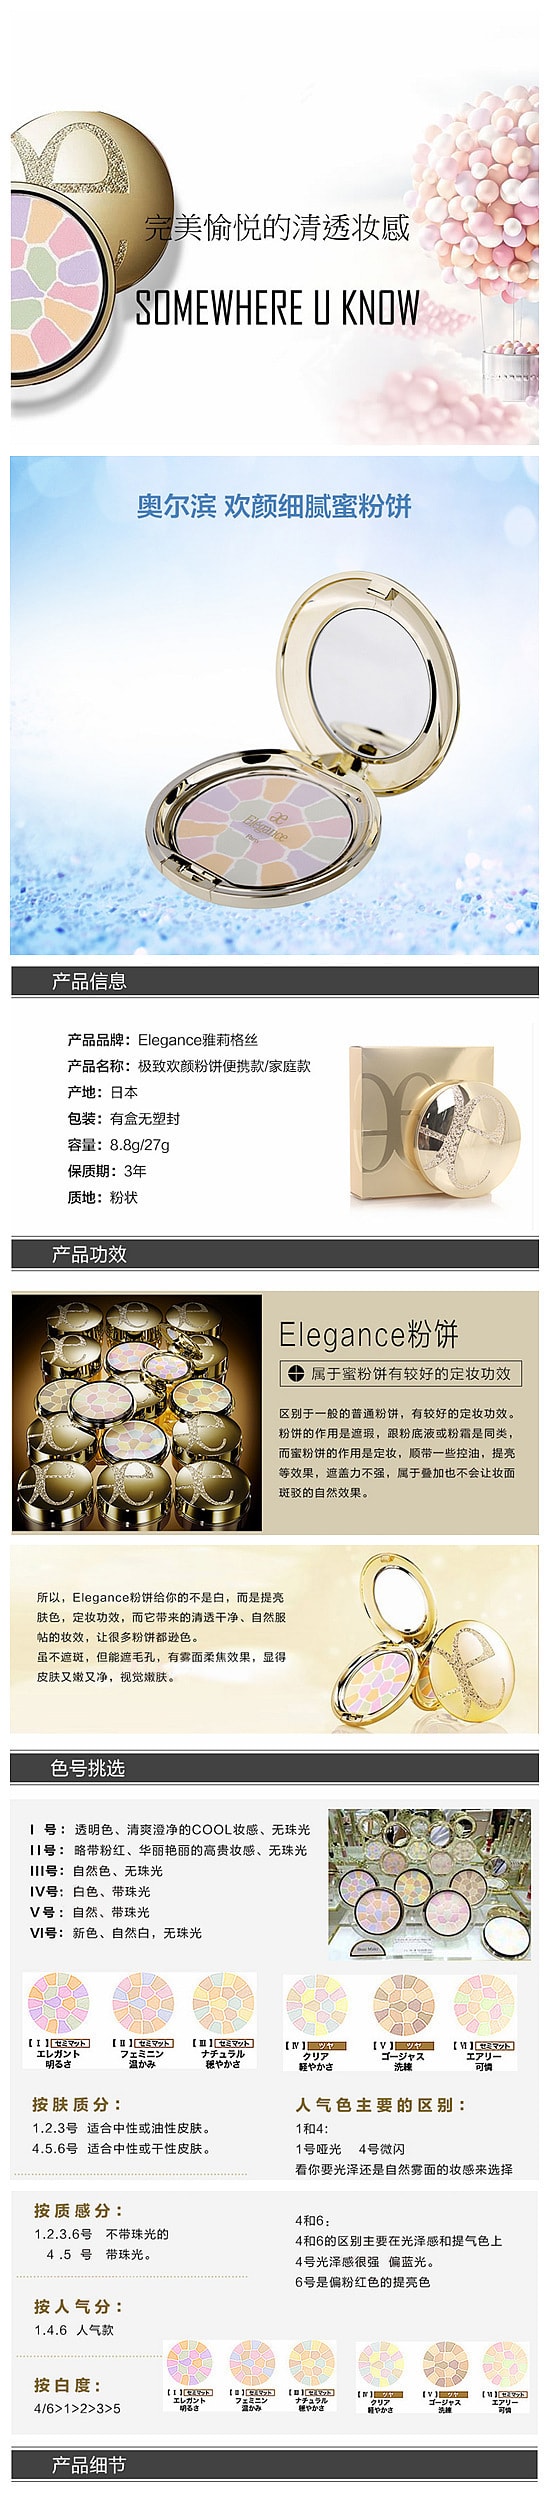 【日本DHL直邮】ELEGANCE 极致欢颜蜜粉饼 #6号 E大饼 8.8g COSME大赏受赏